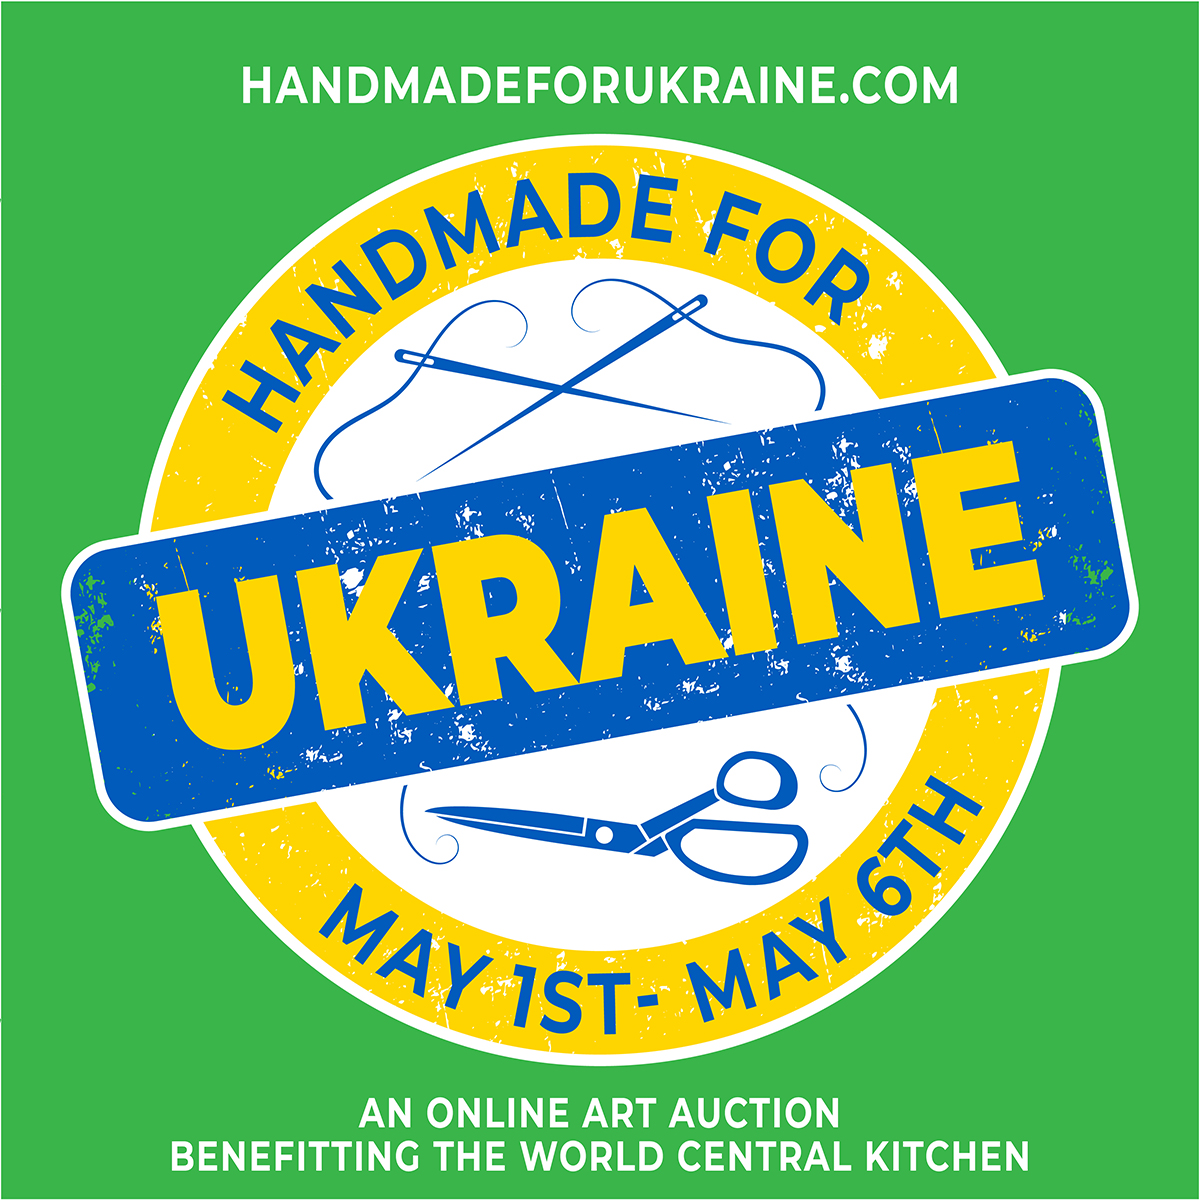 handmade-for-ukraine-logo.jpg